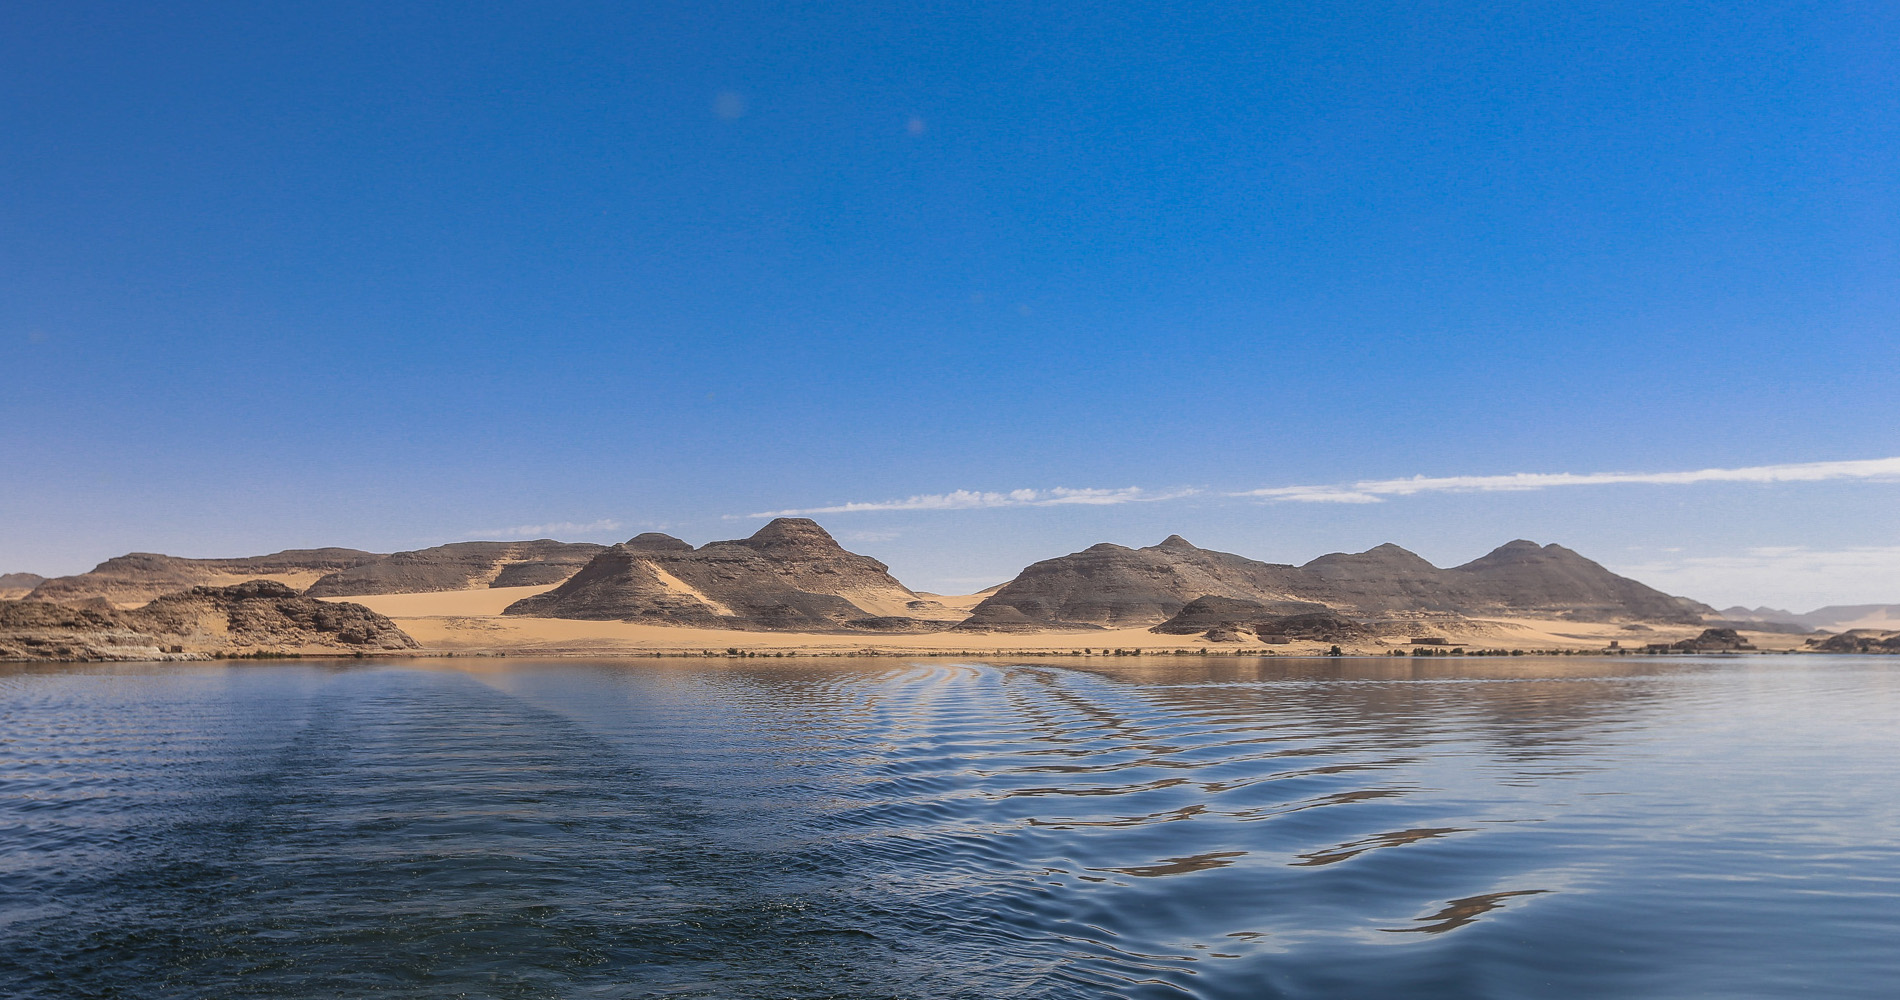 Le site d’Amada vu du lac Nasser